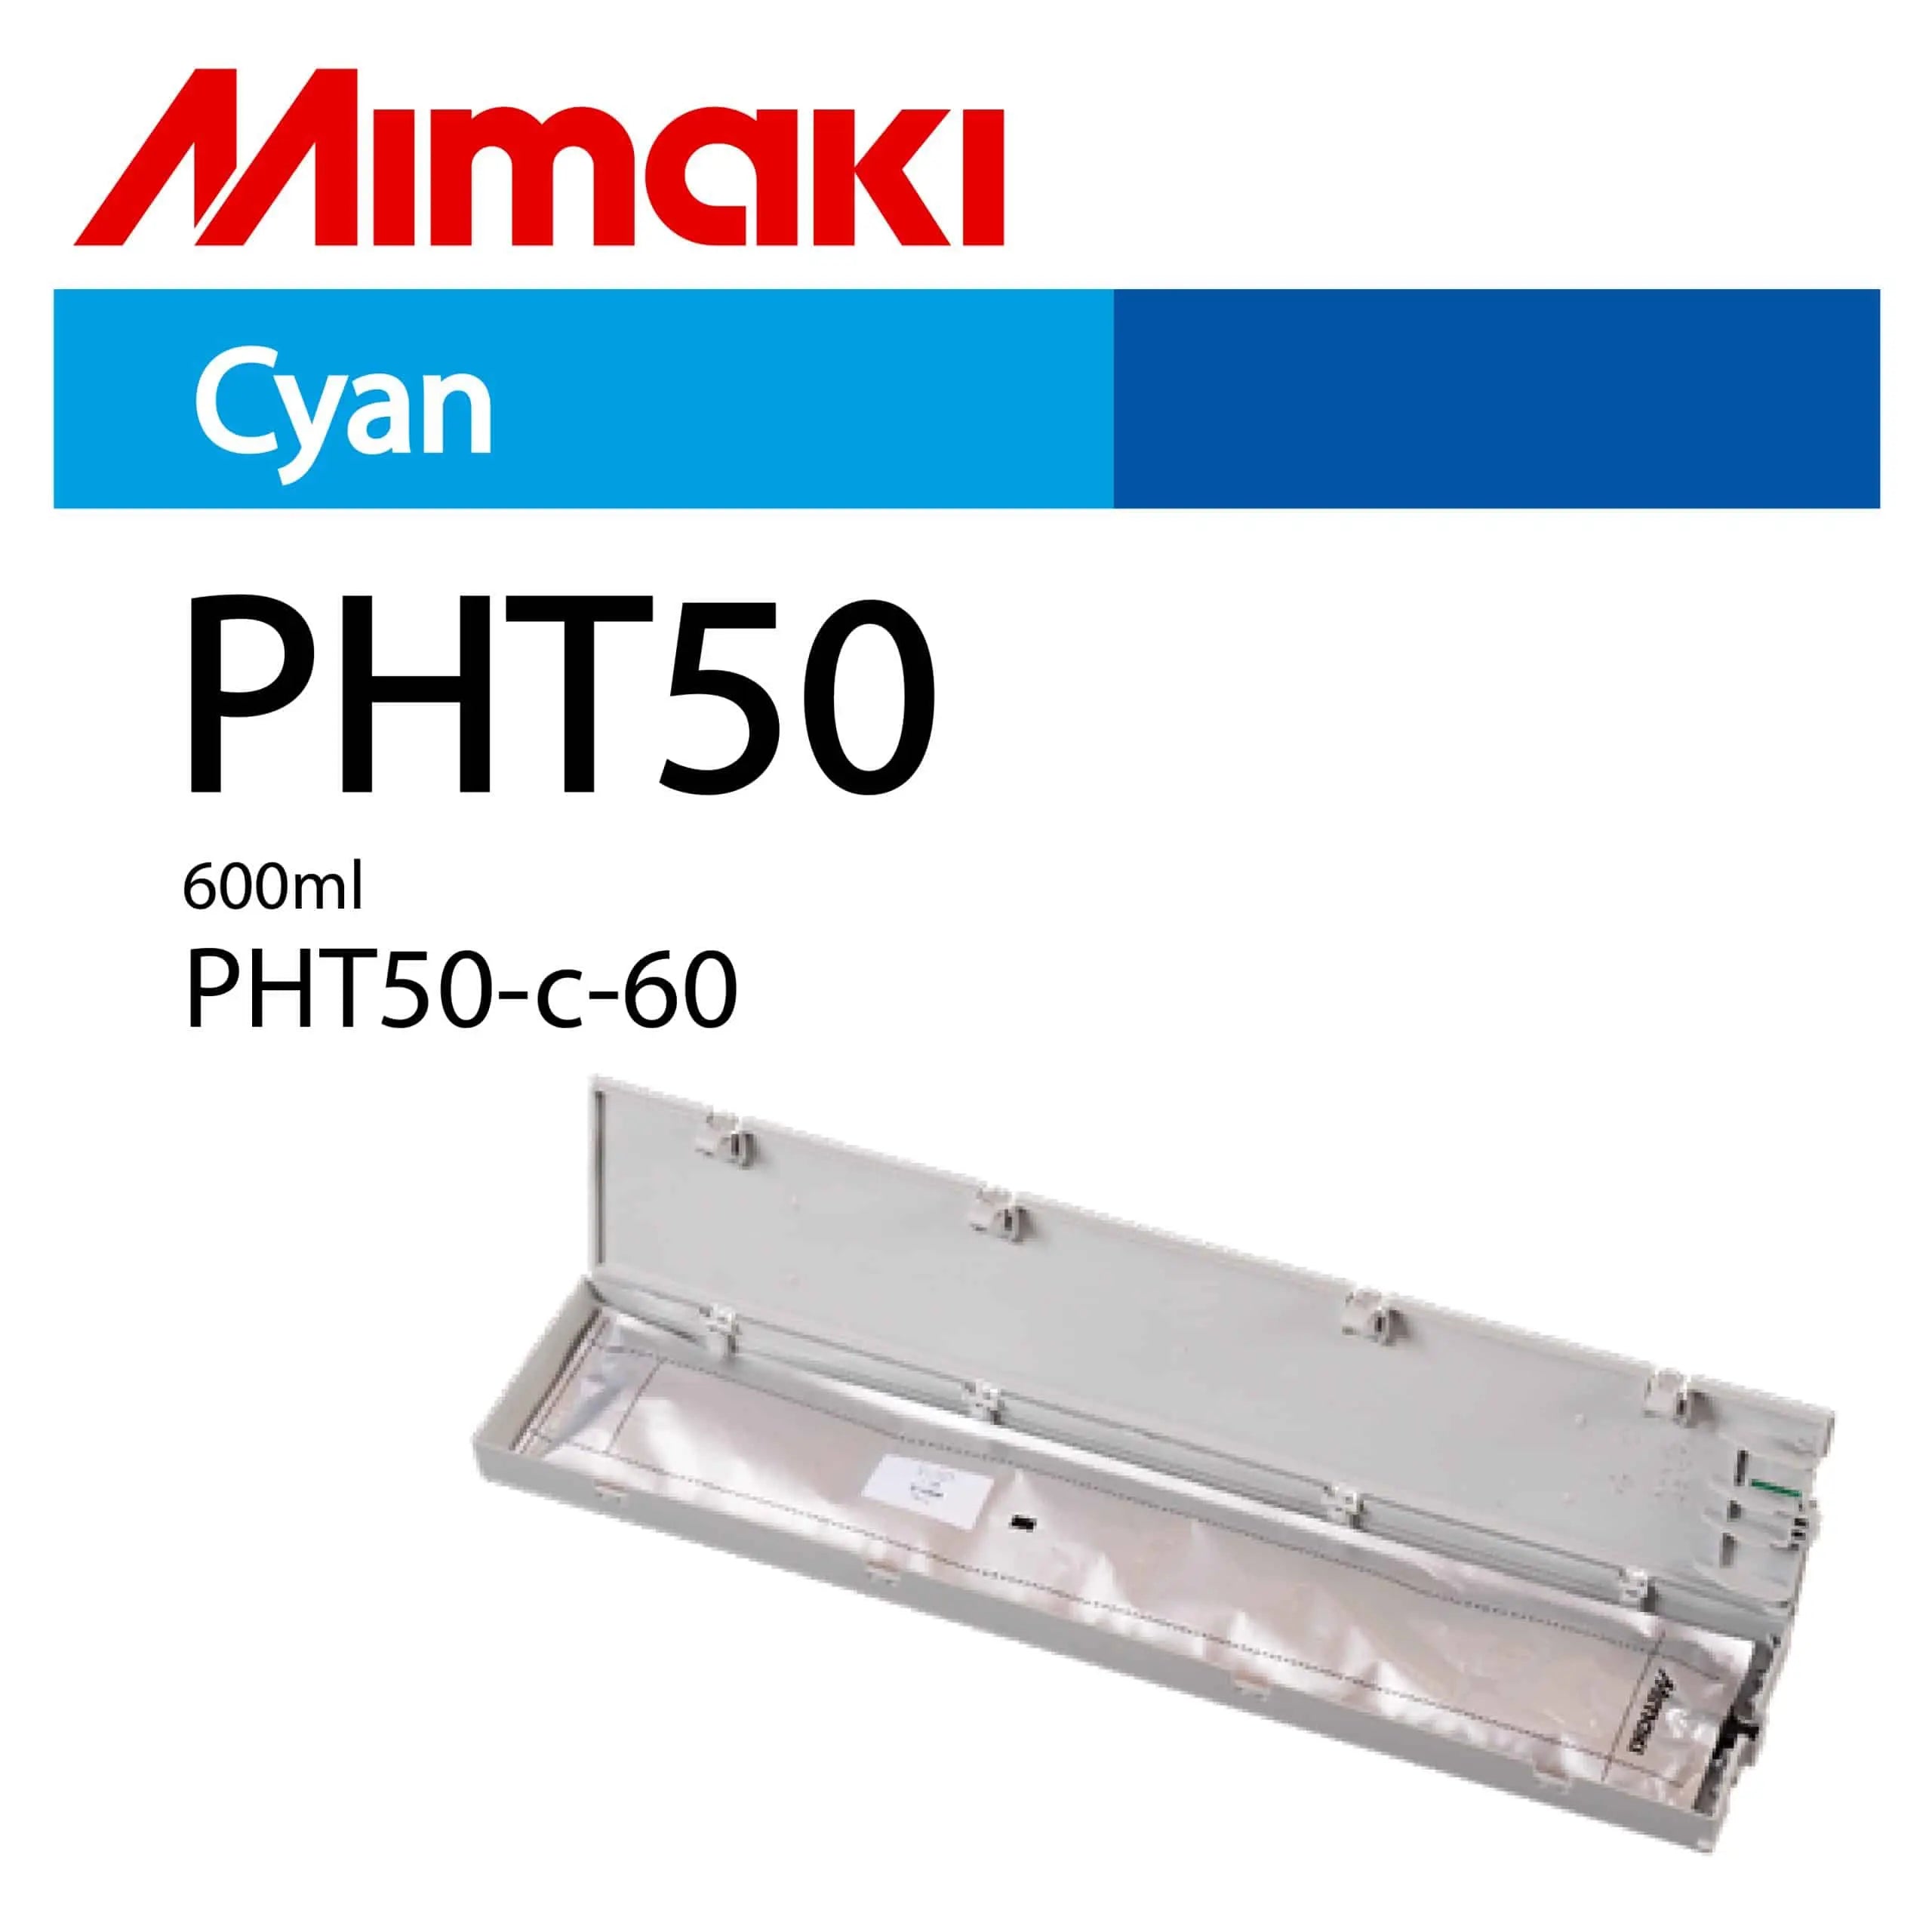 Mimaki PHT50-c-60 Cyan 600ml Ink Cartridge